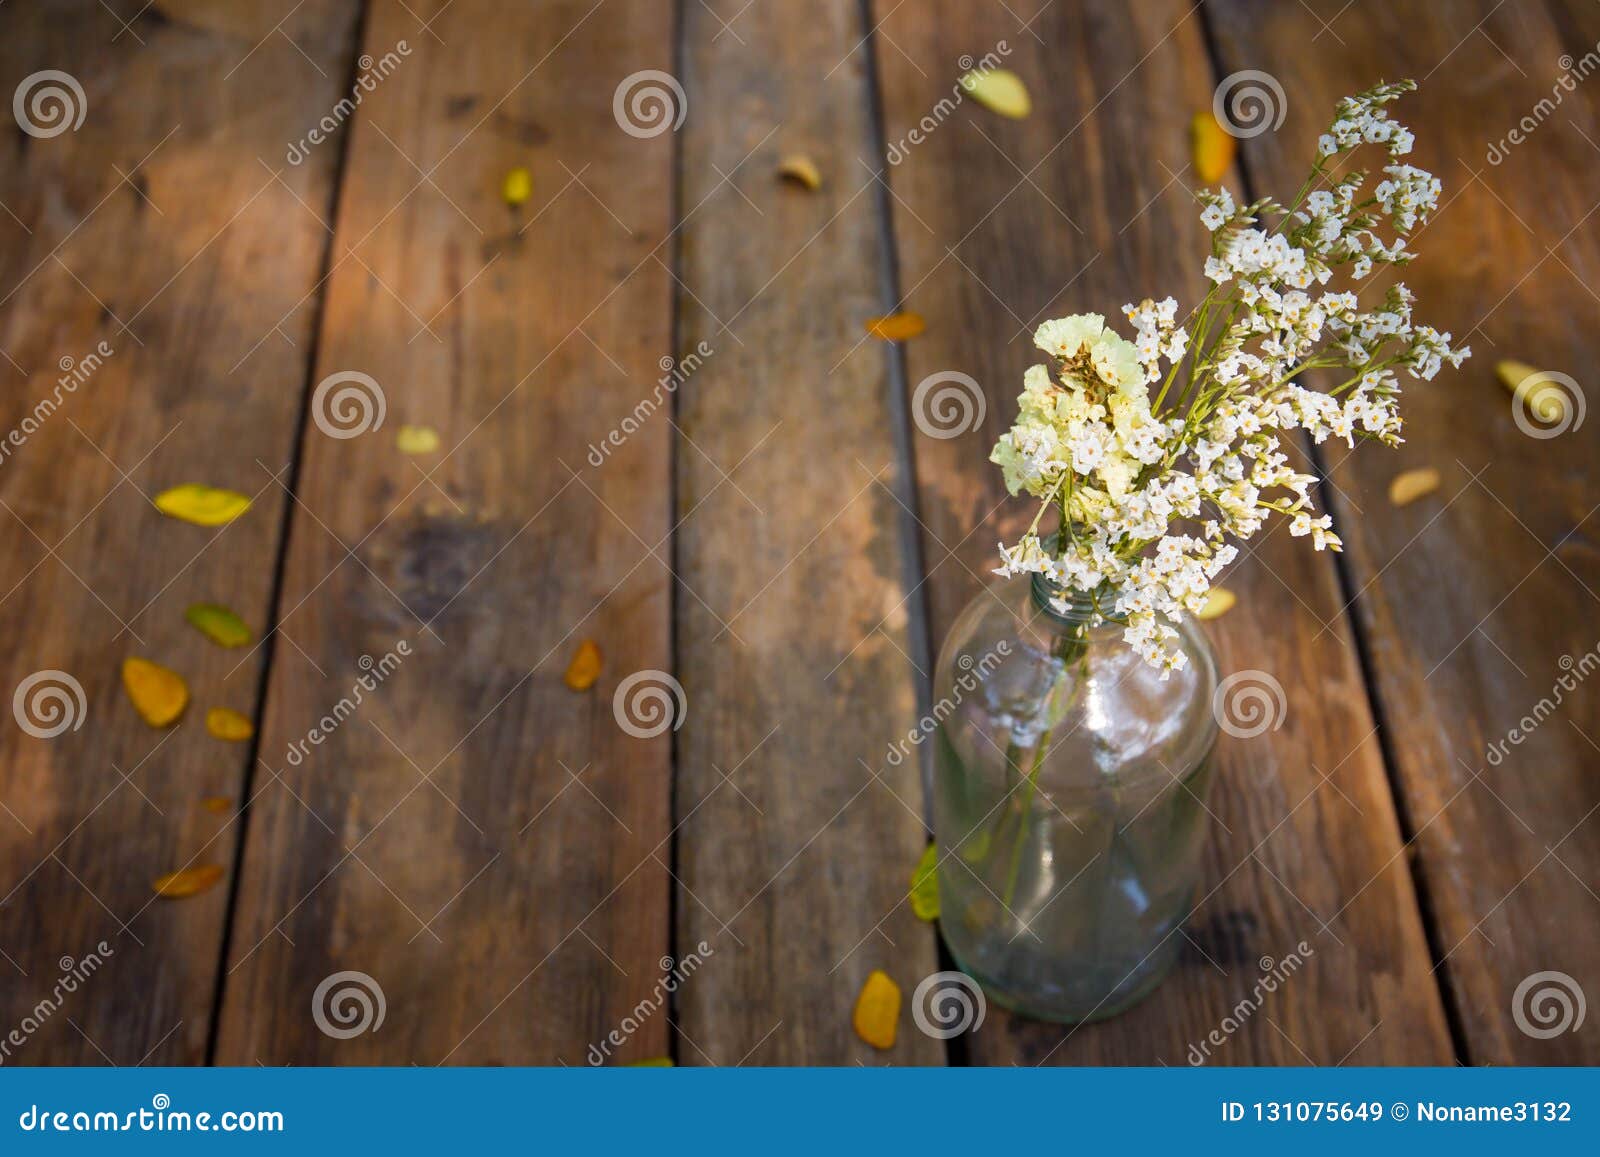 Vintage Flower In Glass Bottle Stock Image Image Of Decoration Arrangement 131075649